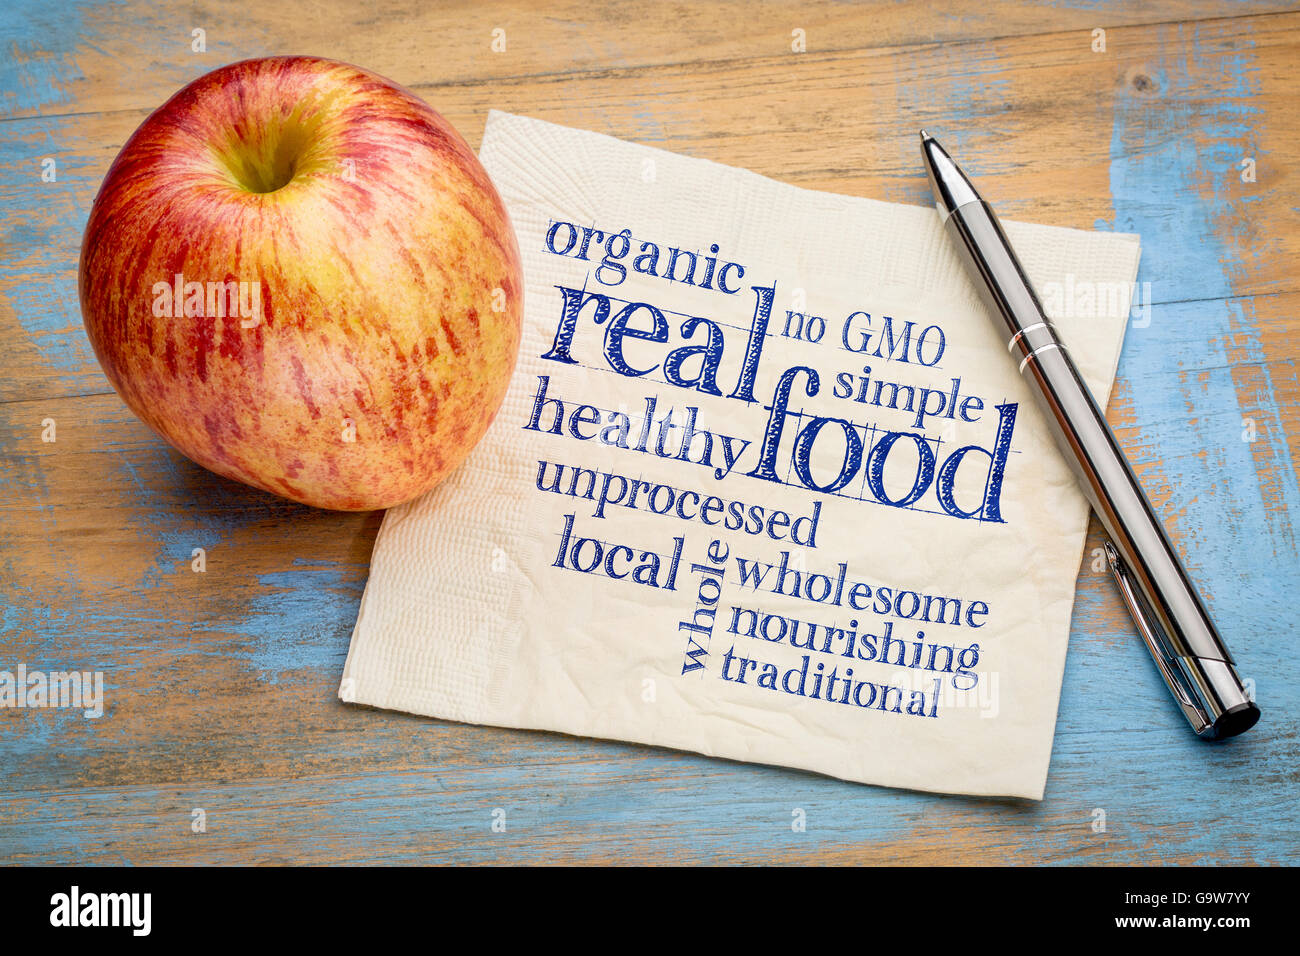 richtiges Essen Wortwolke auf einer Serviette mit einem frischen Apfel - gesunde Lifestyle-Konzept Stockfoto